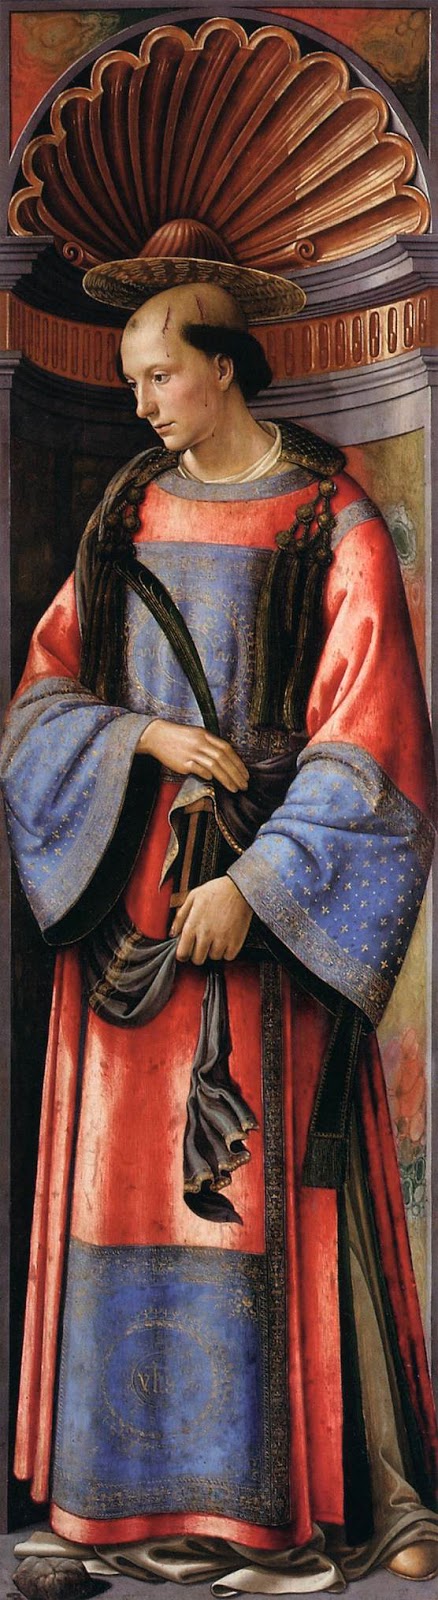 Domenico+Ghirlandaio-1448-1494 (102).jpg